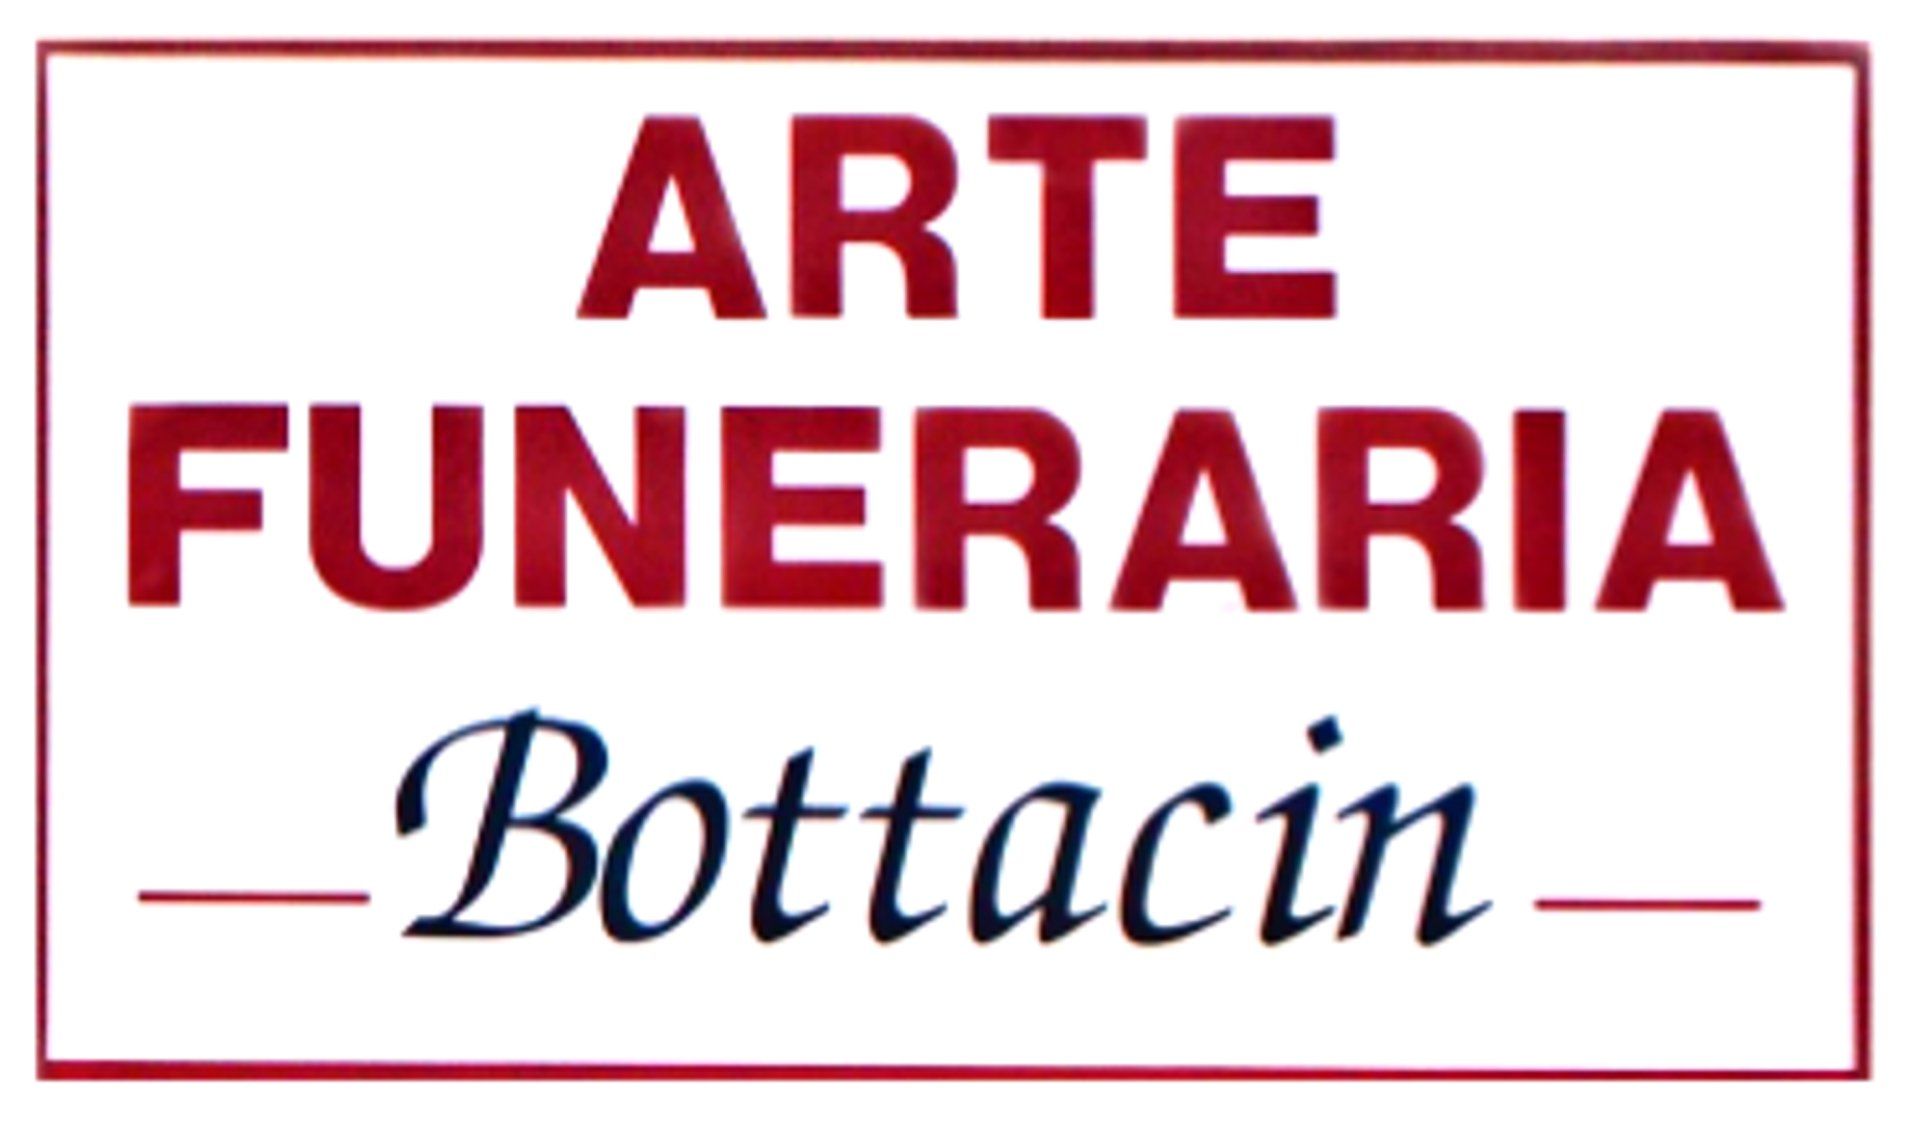 Onoranze Funebri Arte Funeraria Bottacin - LOGO